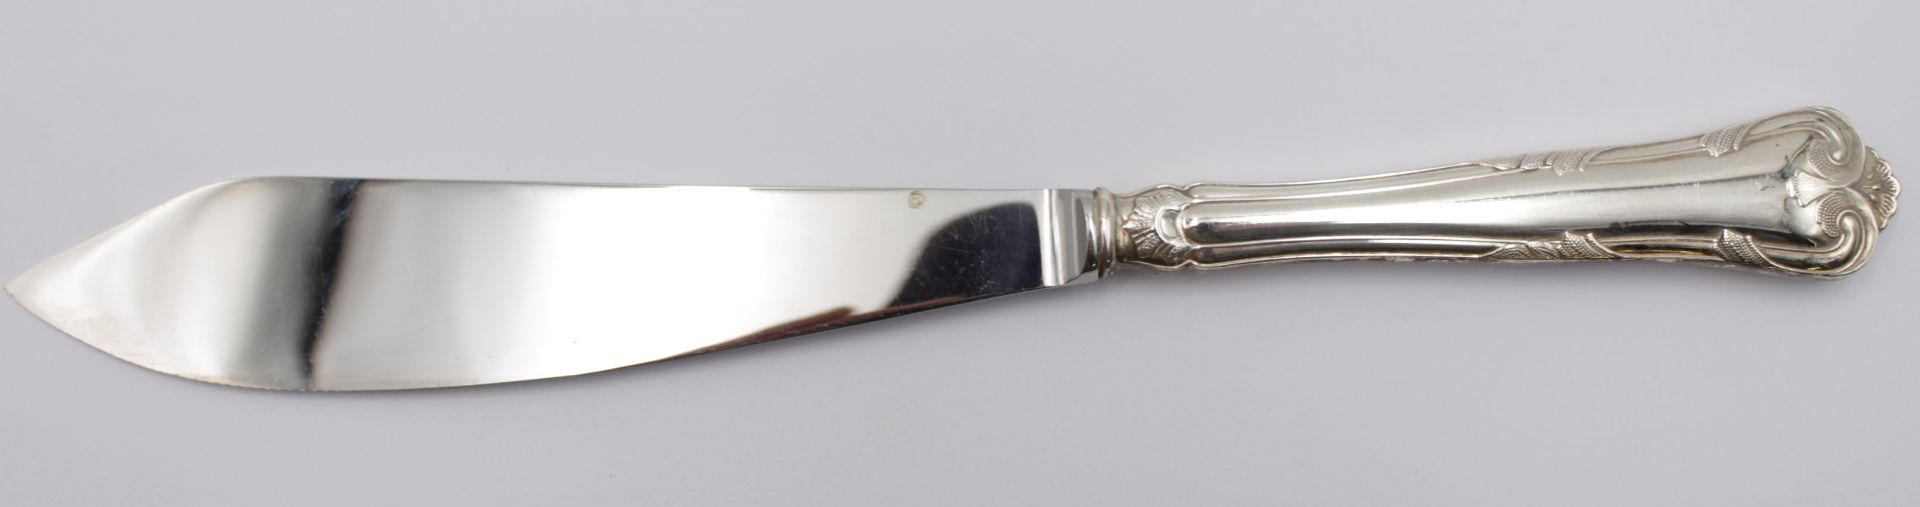 Tortenmesser, Silbergriff, Cohr, L-26,5cm.